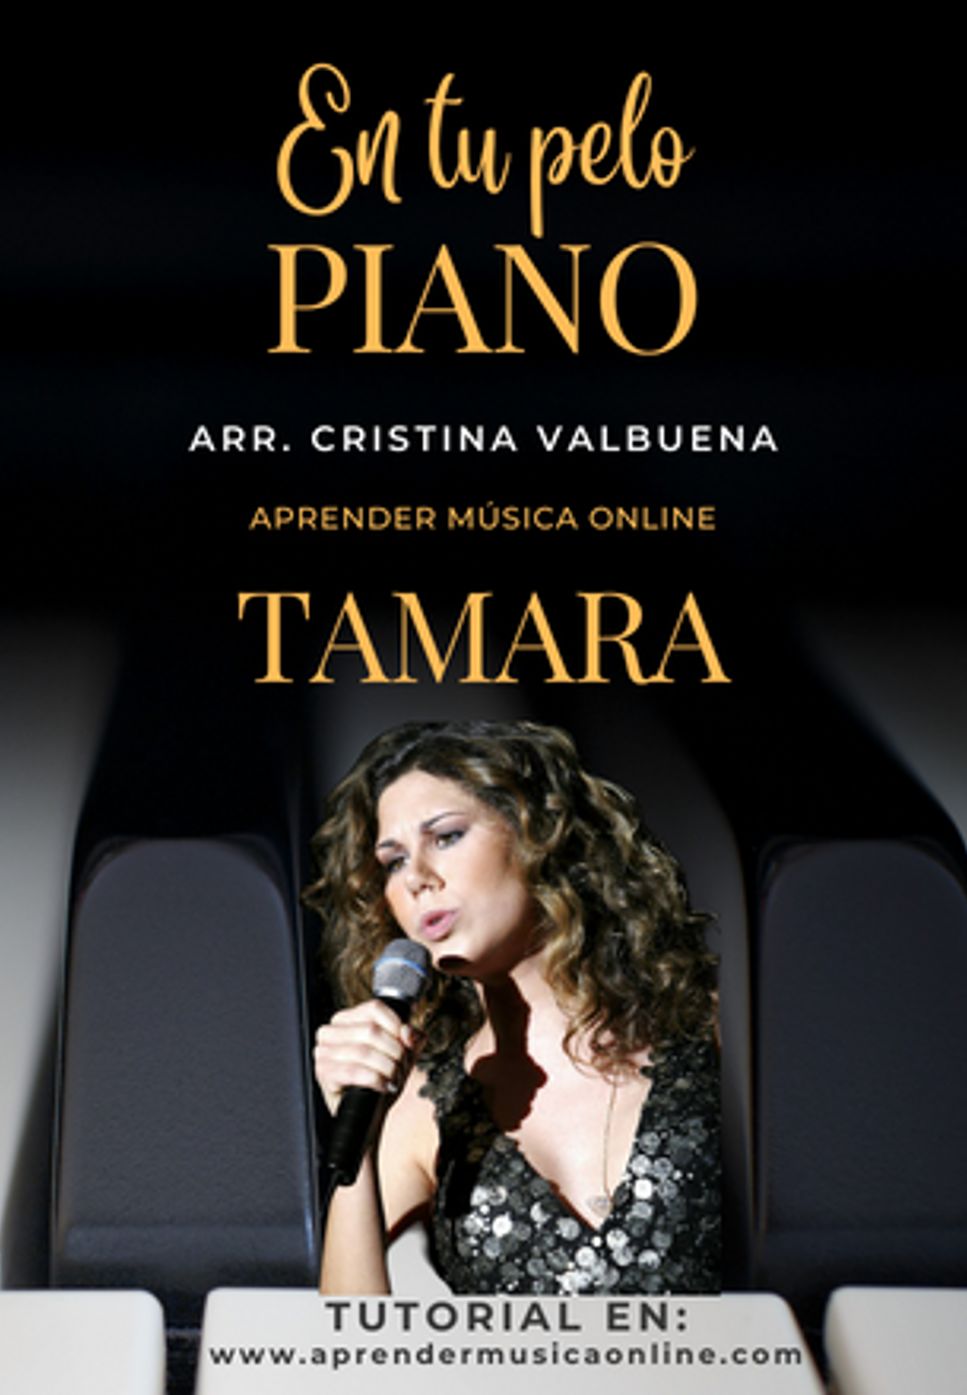 Tamara - En tu pelo by Cristina Valbuena